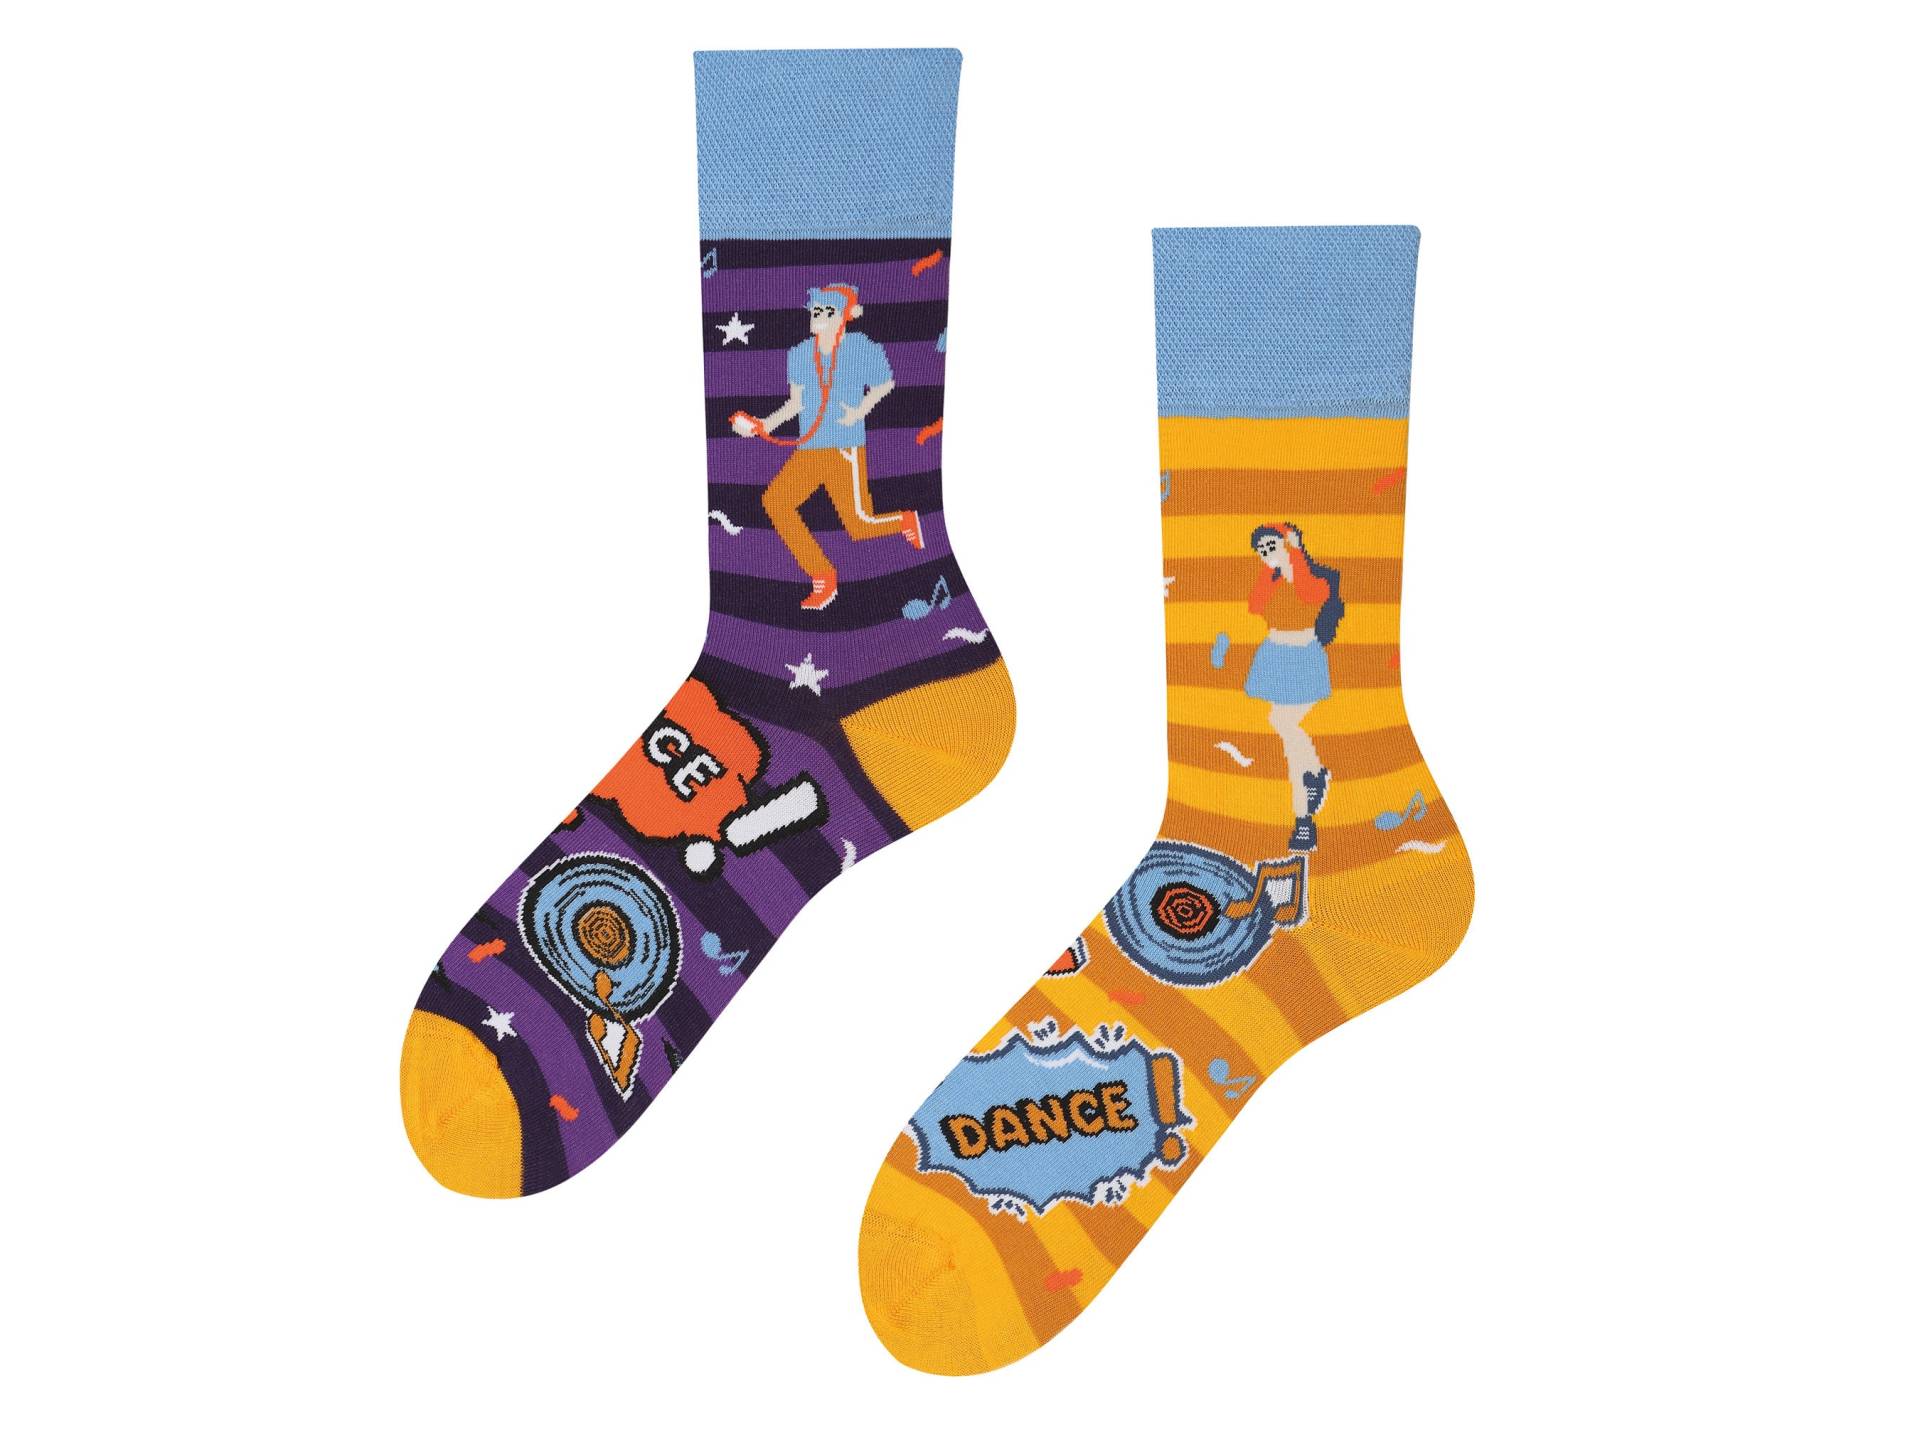 Coole Socken Für Party| Cool Socks For Party| Bunte | Colorful Socks| Geschenk Dj| Musiker| Zum Abi von TODOSOCKS